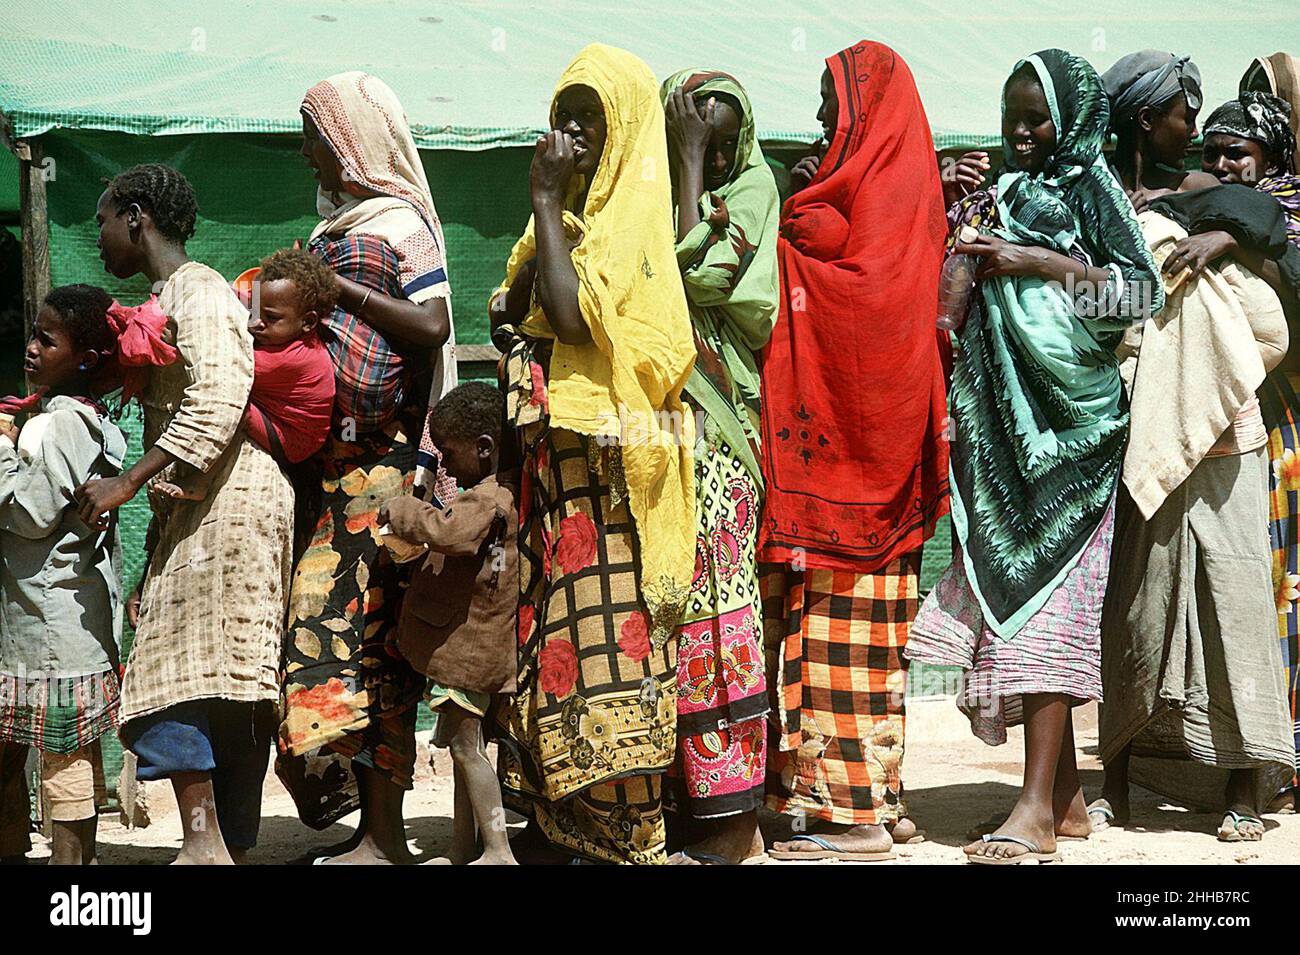 Les femmes et les enfants somaliens se font la queue dans une station d'aide lors de l'opération multinationale de secours Restore Hope DN-ST-93-02601. Banque D'Images